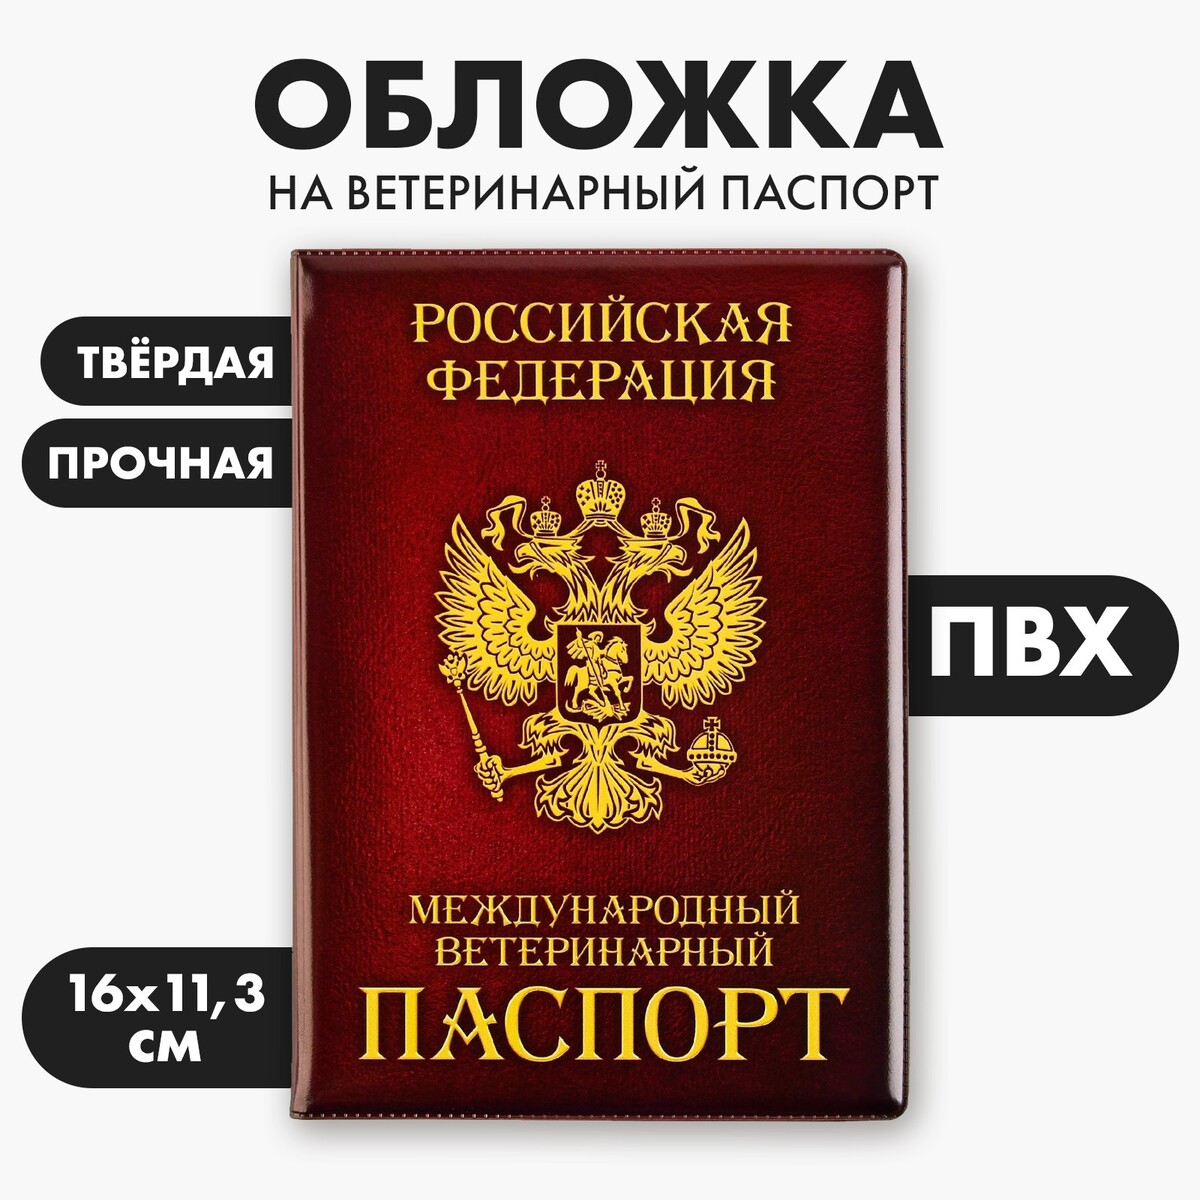 Обложка на ветеринарный паспорт обложка на паспорт мрамор серая